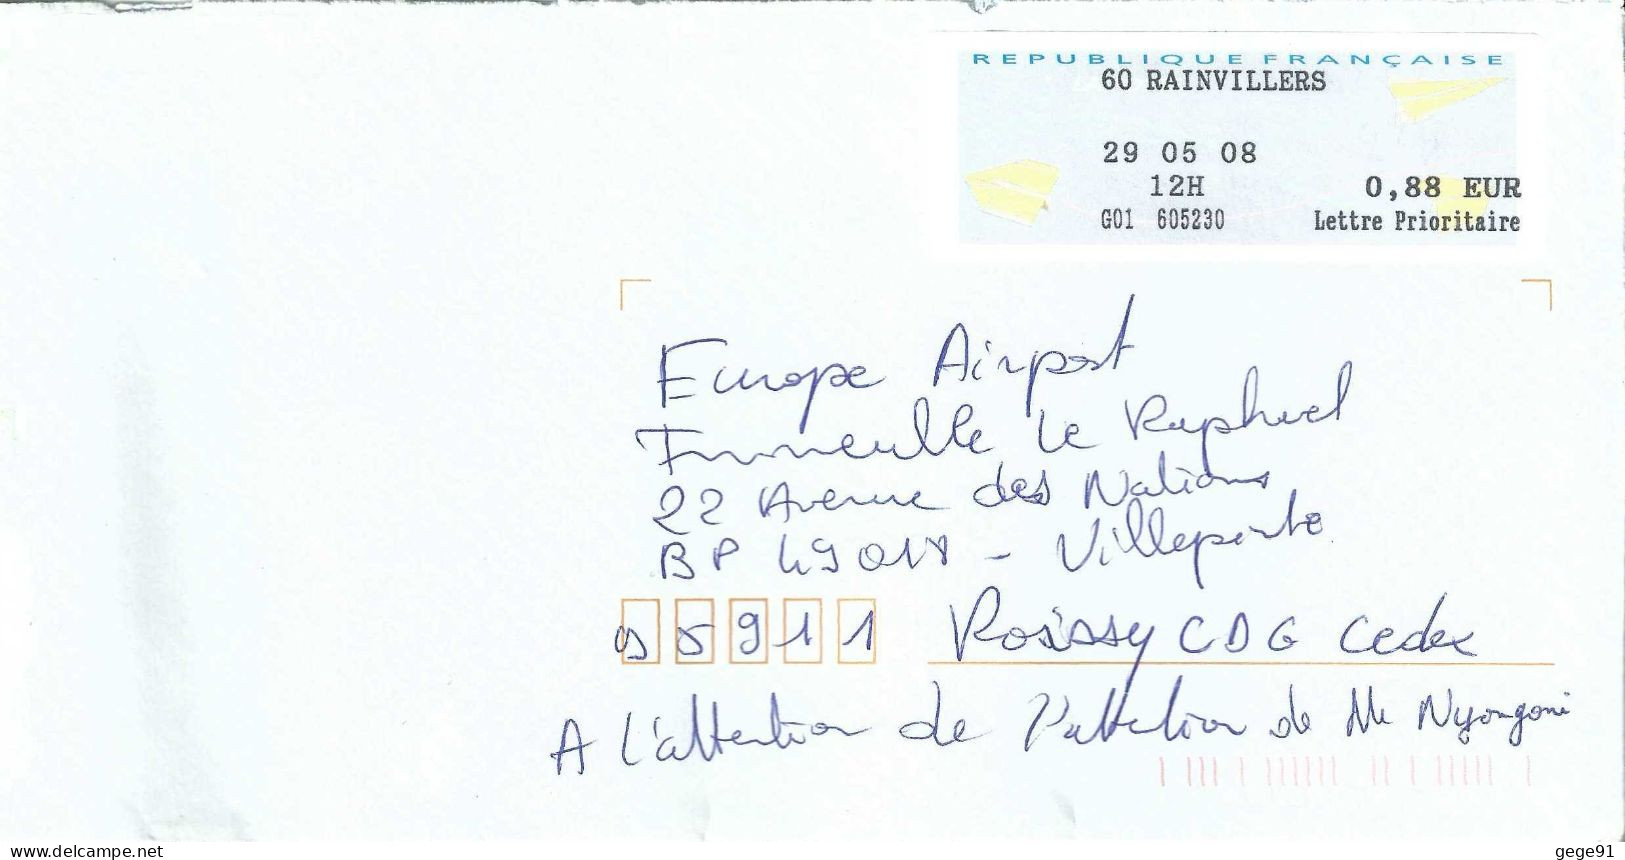 Vignette D'affranchissement De Guichet - MOG - Rainvilliers - Oise - 2000 Type « Avions En Papier »